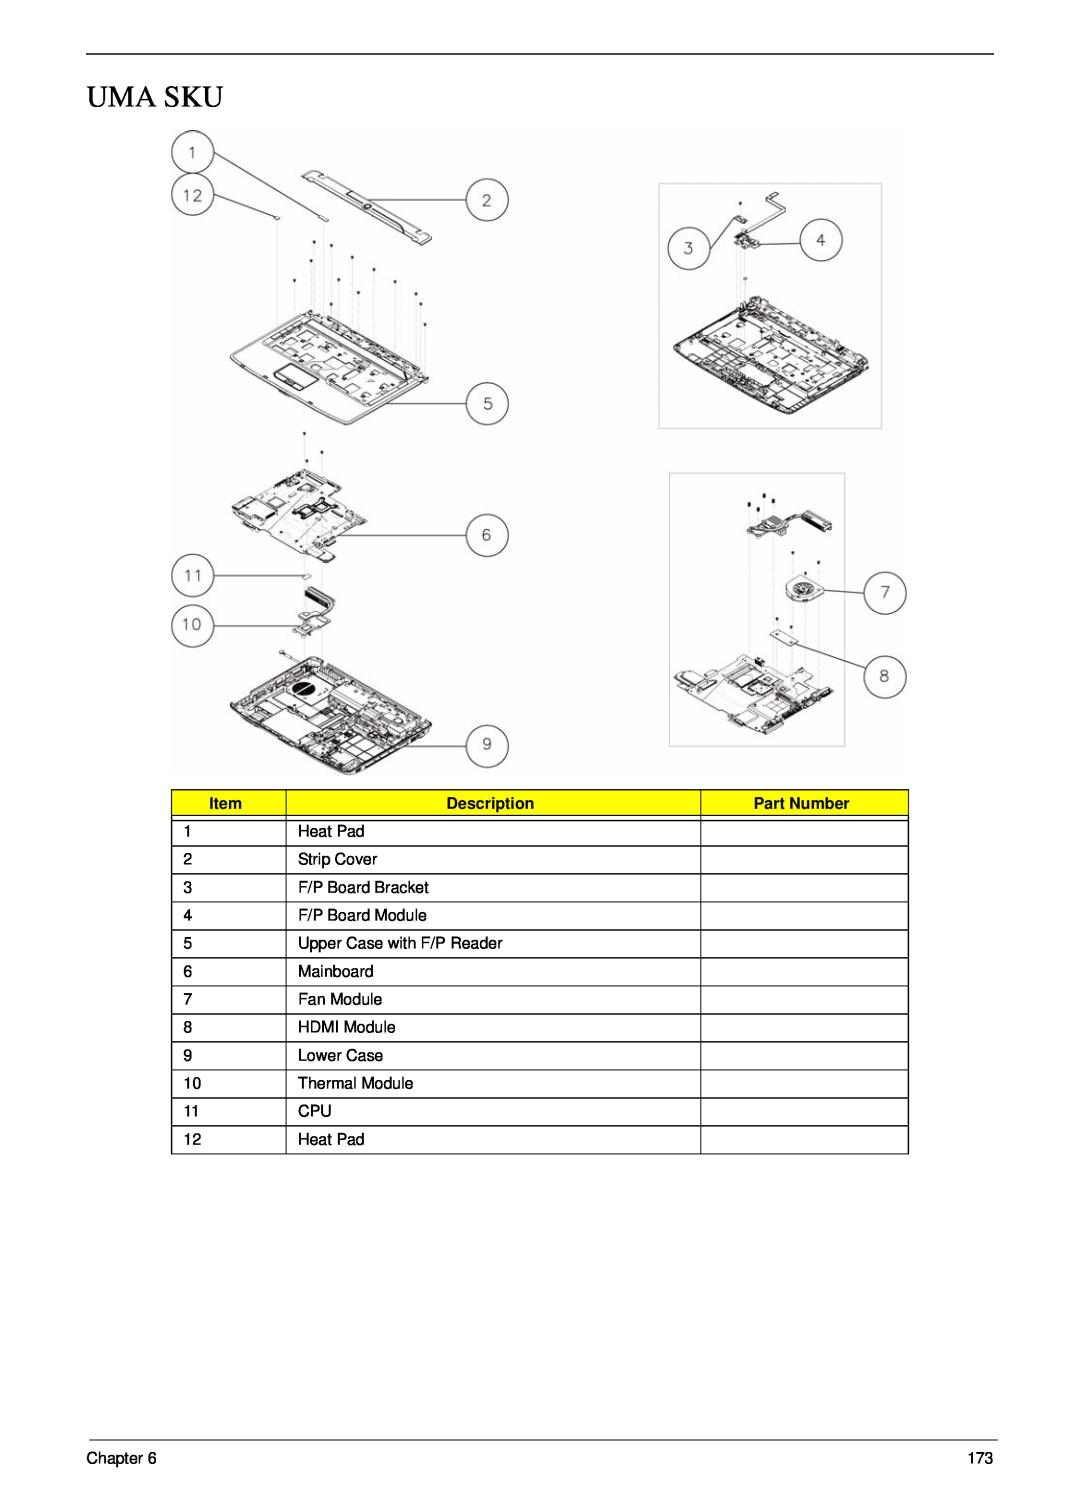 Acer 5530G manual Uma Sku, Description, Part Number 